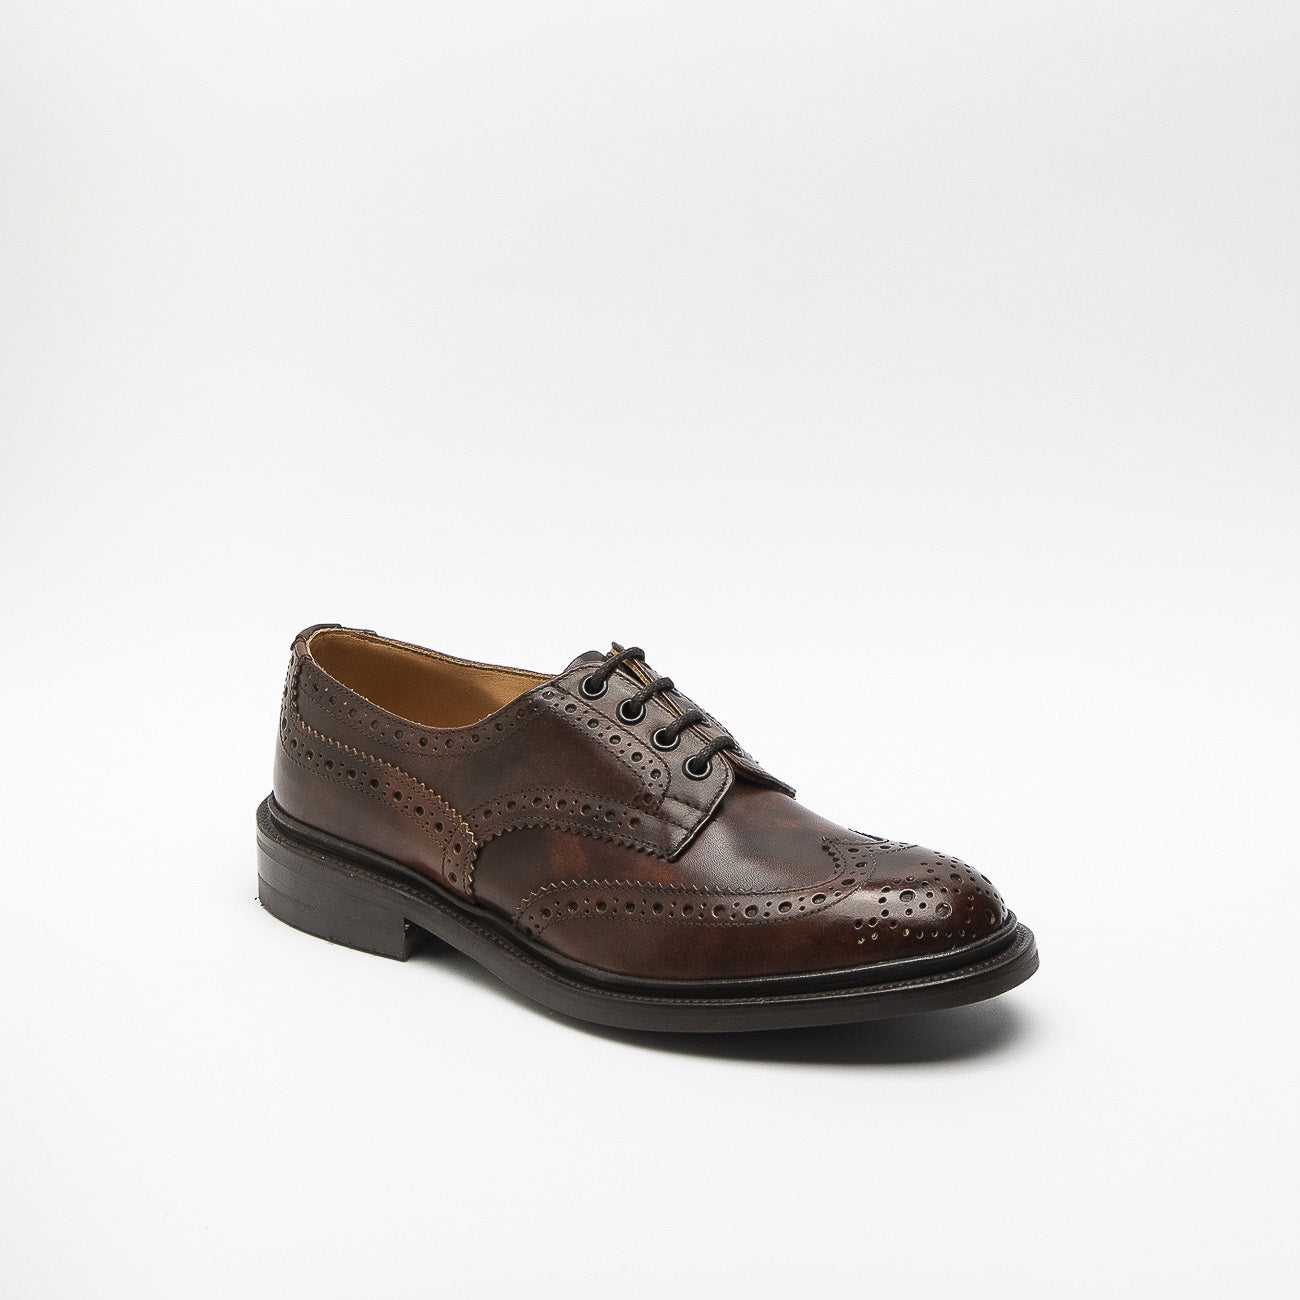 Tricker's Bourton dark brown museum calf derby shoe